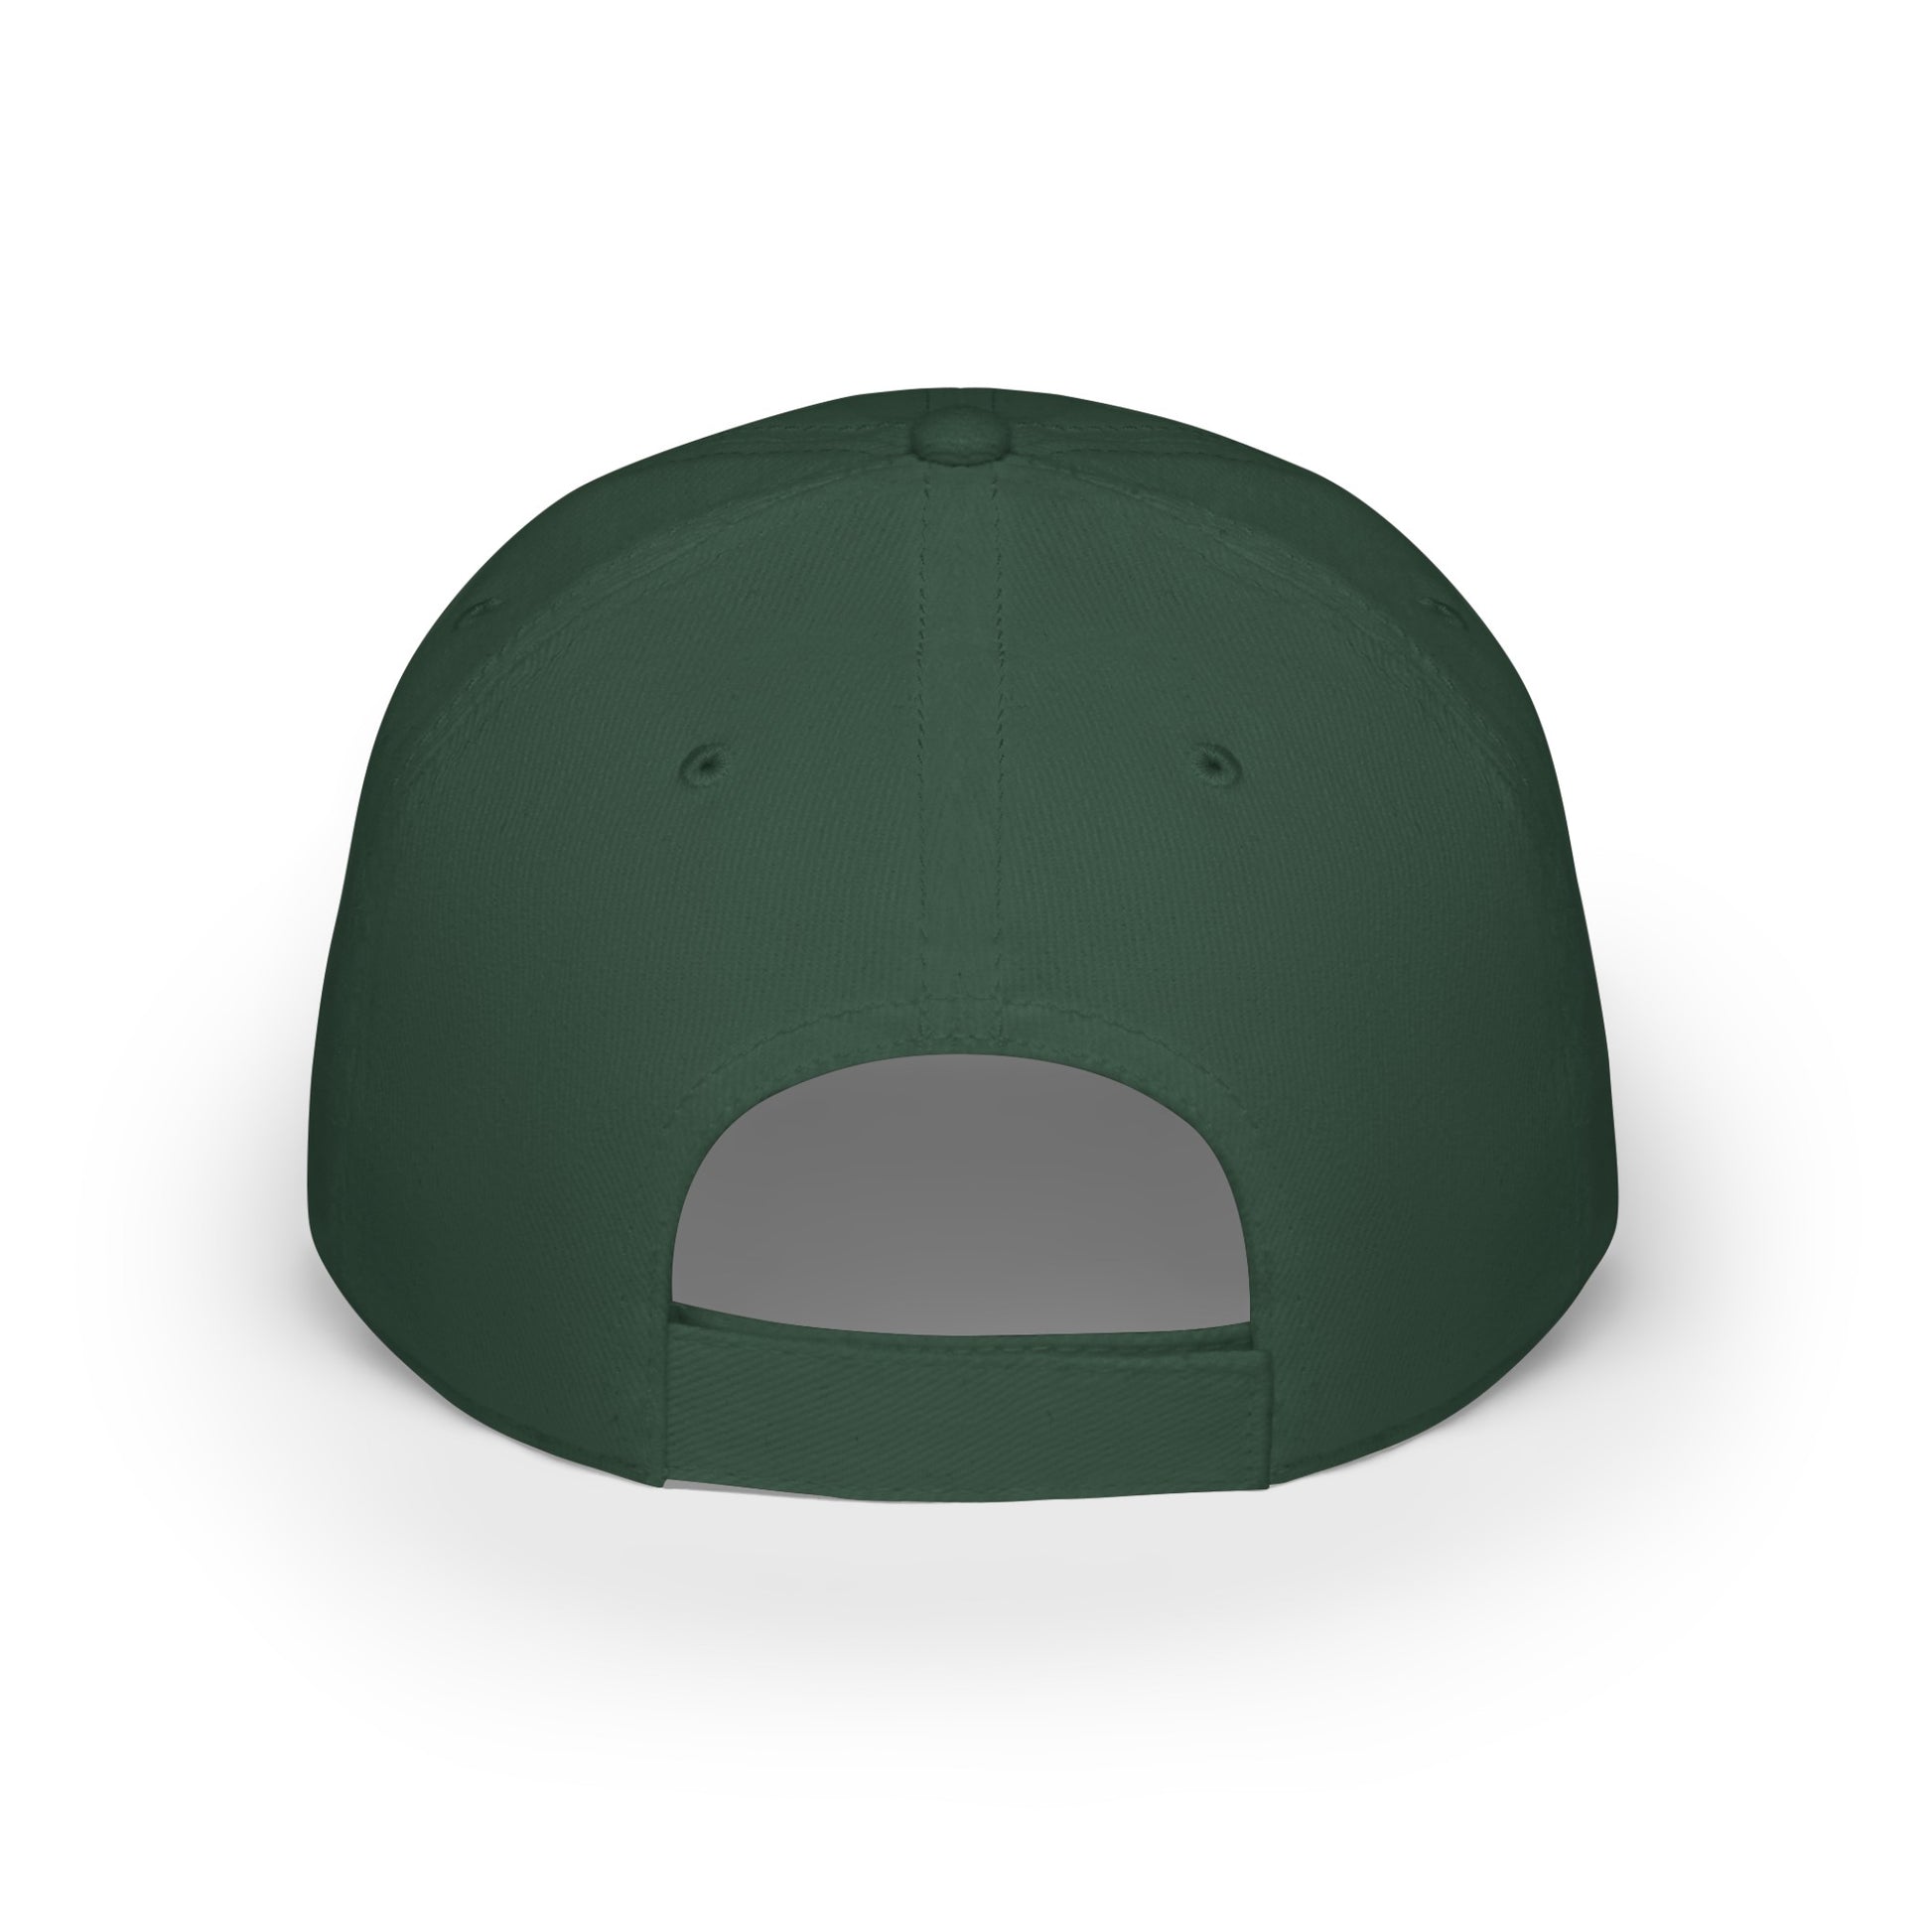 MDBTDJ#AJWRC - Low Profile Baseball Cap Tattooed Dj's Limited Edition, Hats, Tattooed Djs Shop